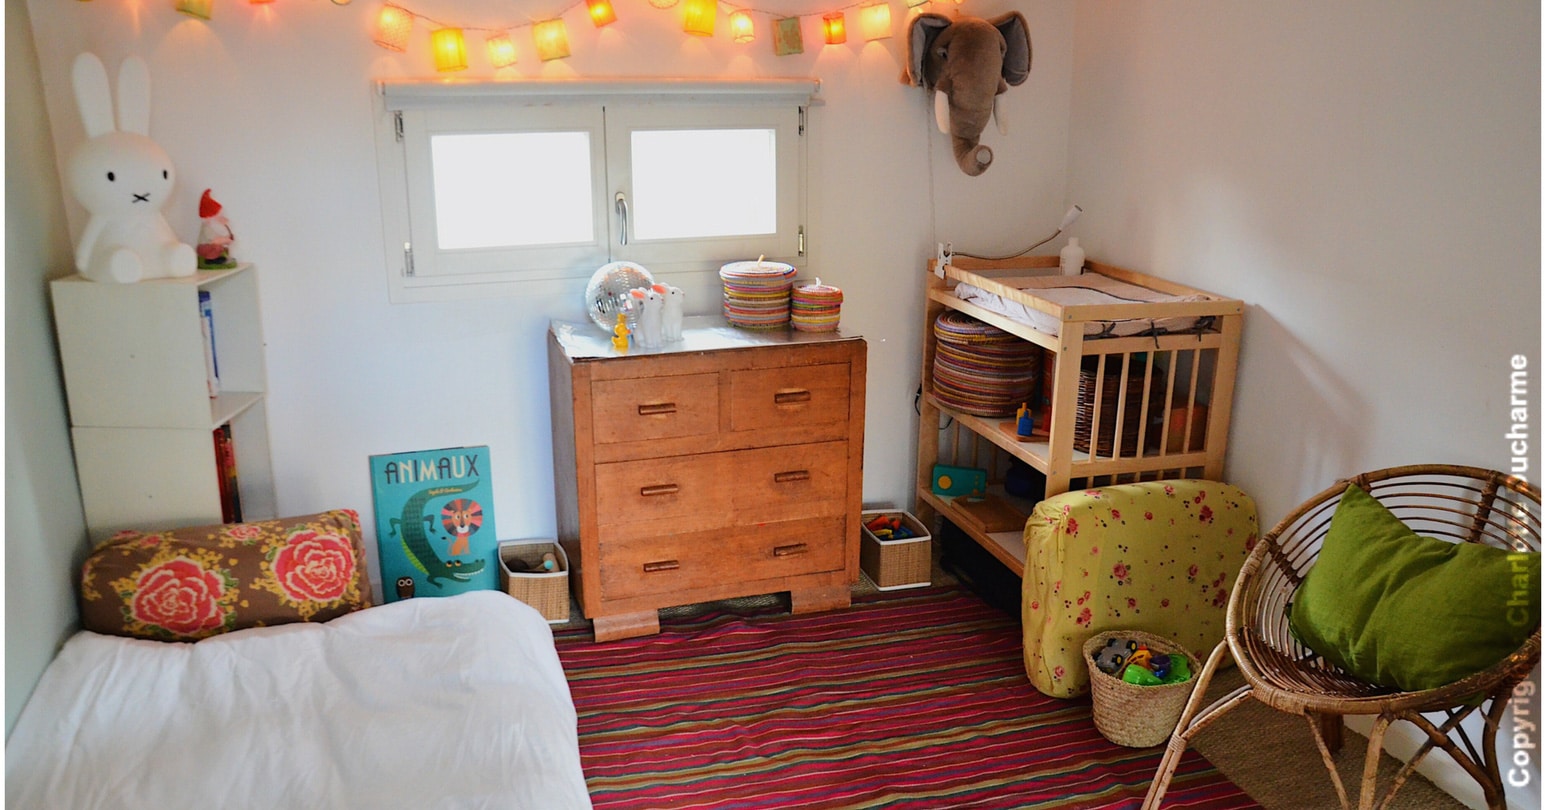 Meubles Montessori pour bébés et enfants - Découvrez nos meubles